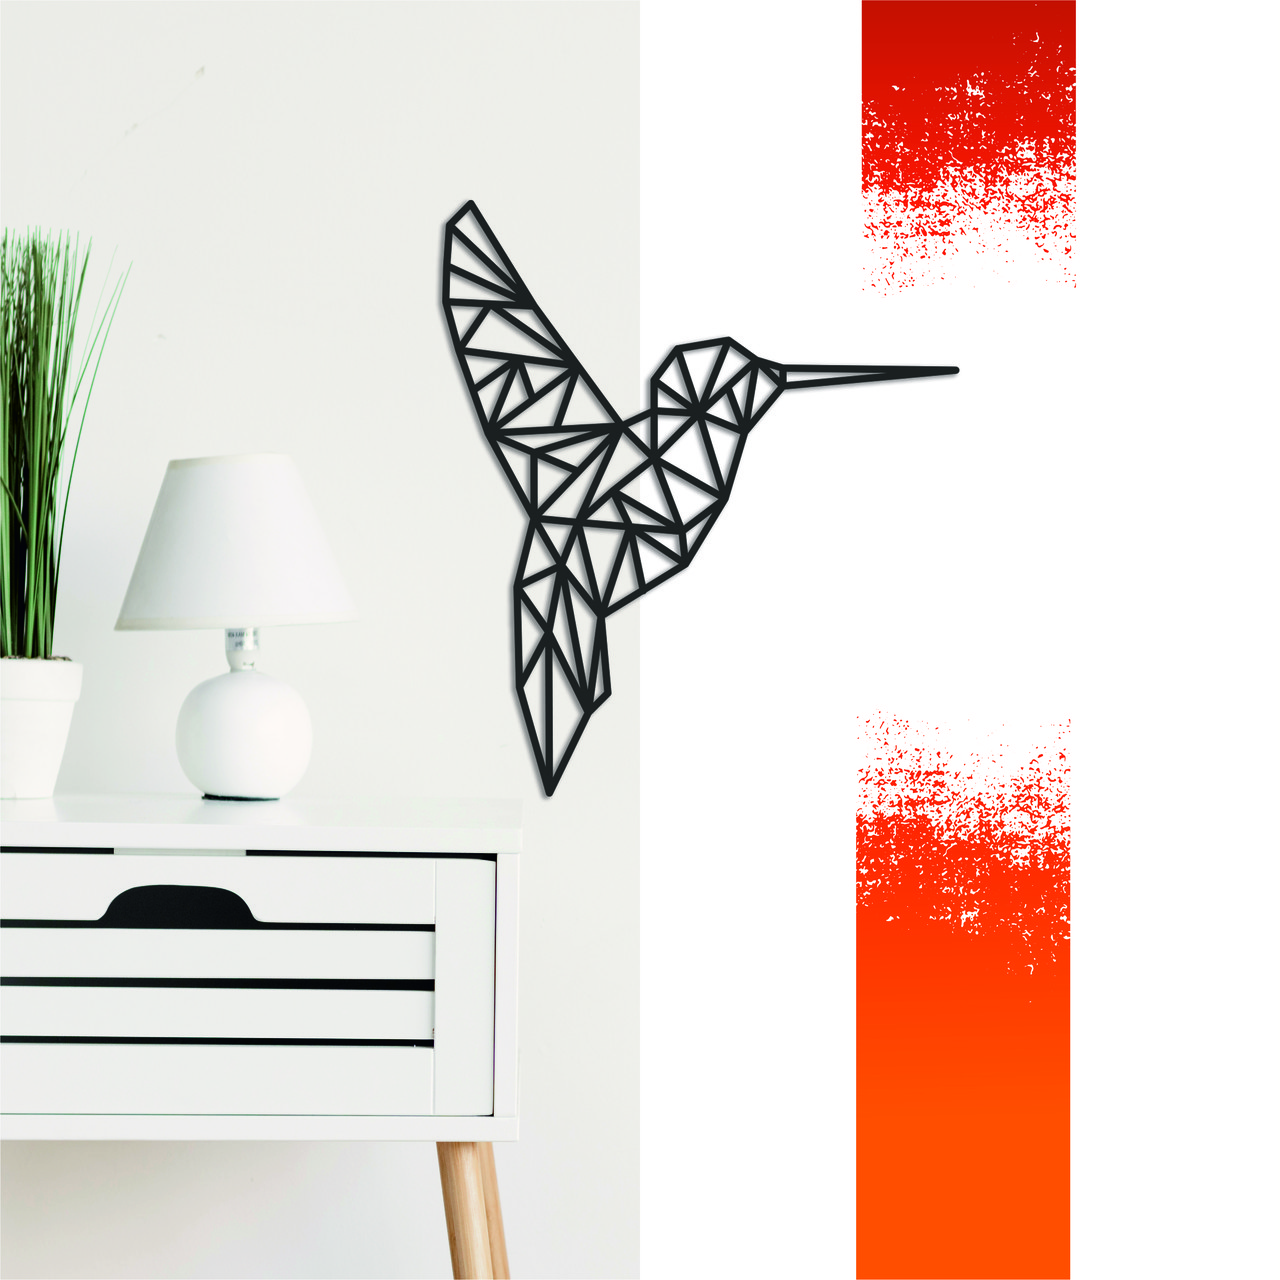 

Декоративная деревянная картина абстрактная модульная полигональная Панно Colibri / Колибри Manific Decor 50*58 см